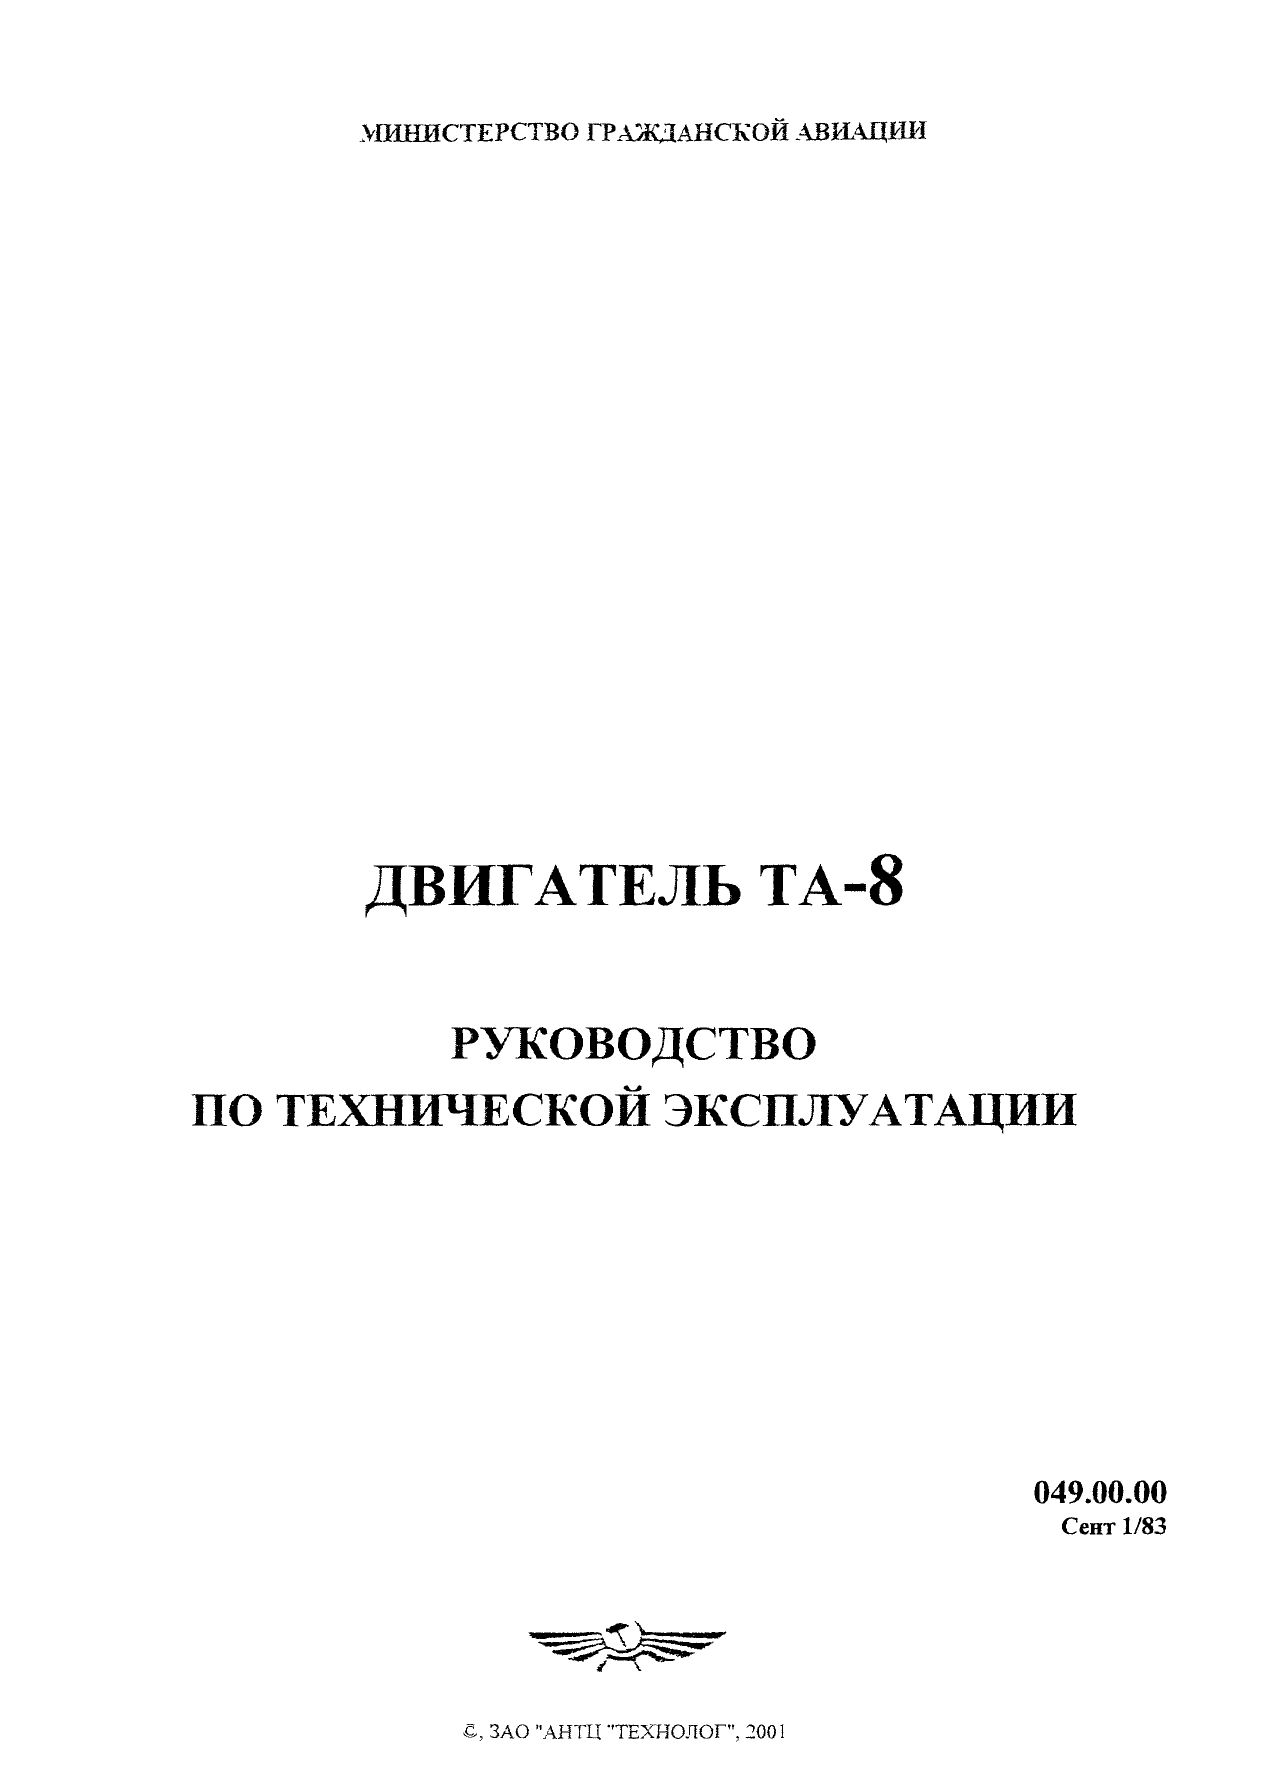 Tu-134_TA-8_RTYE_001